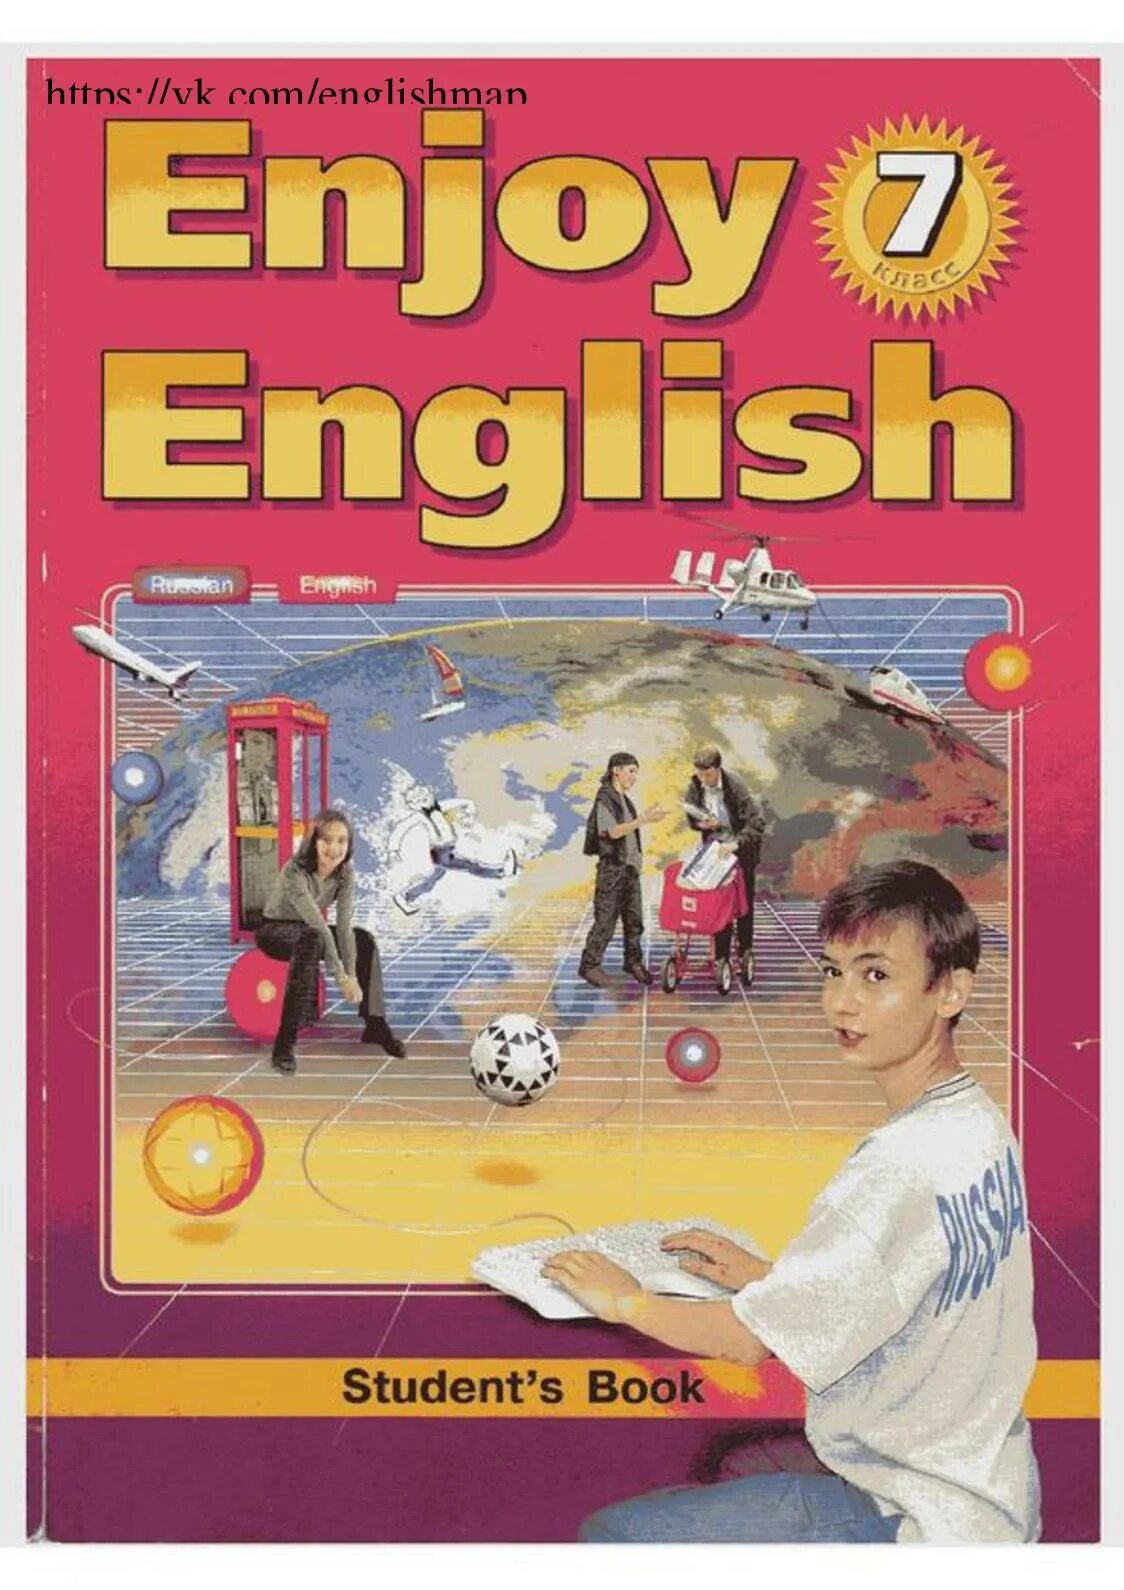 Биболетова 7. Учебник английского языка enjoy English. Enjoy English 7 класс. Энджой Инглиш учебник. Биболетова enjoy English.